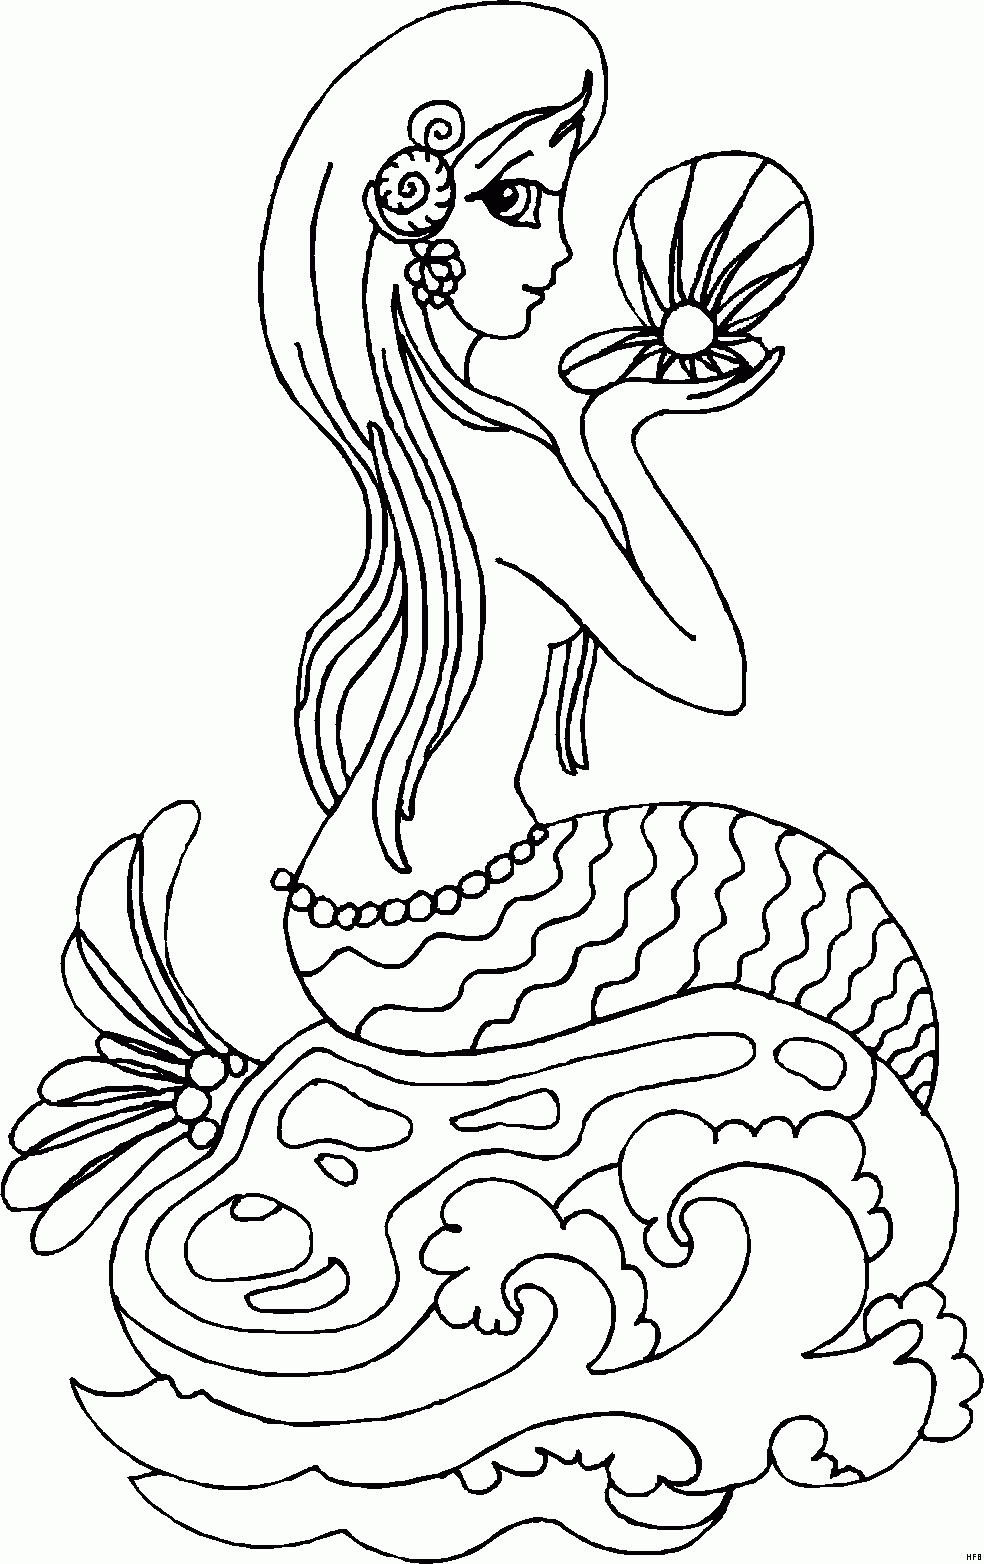 Meerjungfrau Ausmalbild &amp; Malvorlage (Comics) ganzes Malvorlage Meerjungfrau